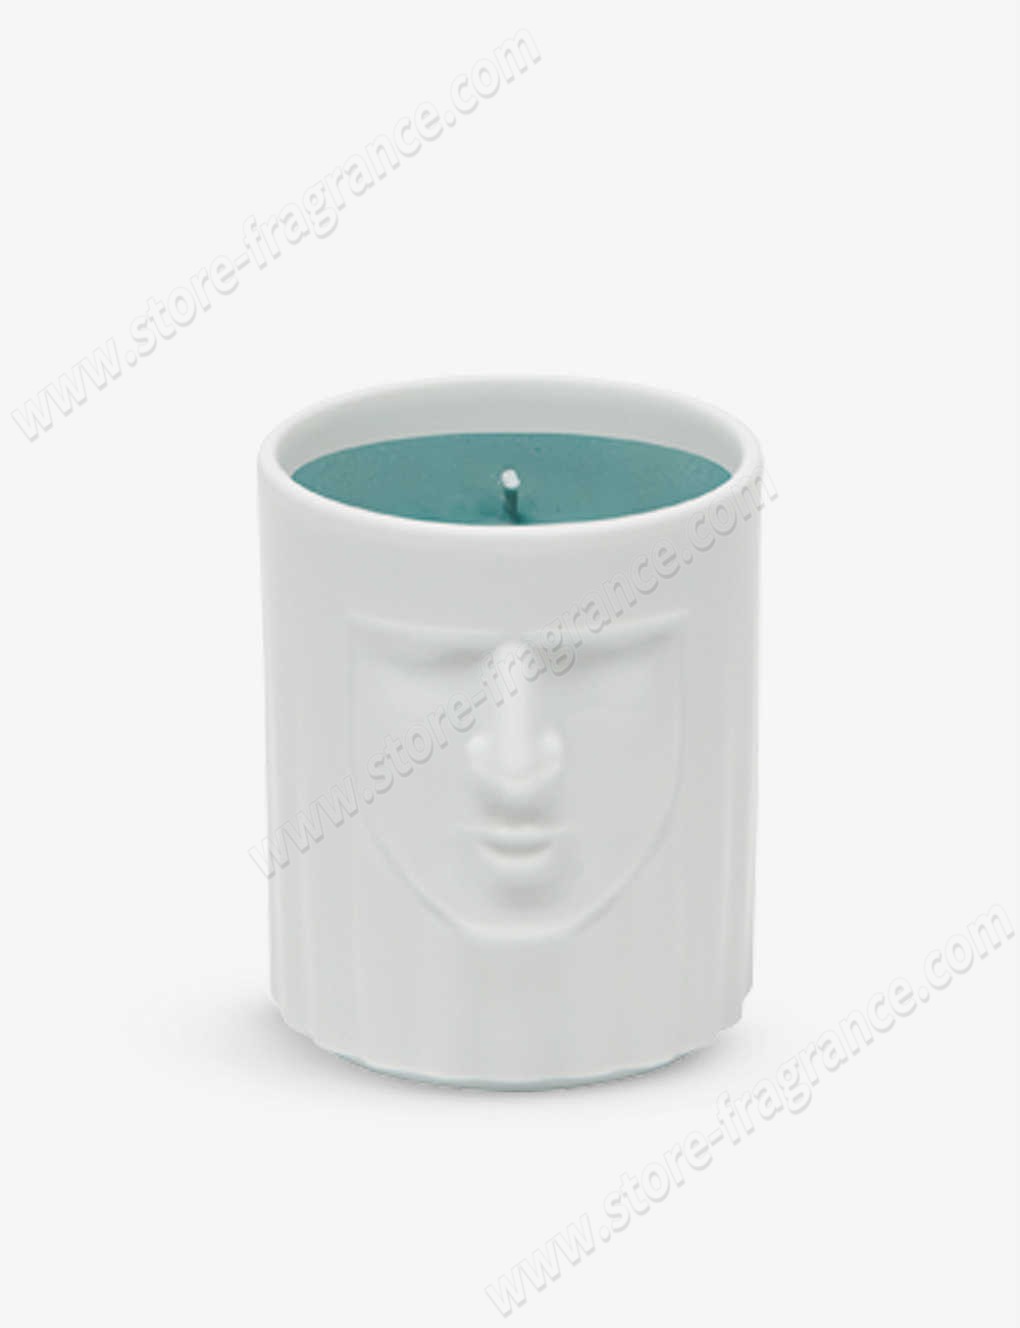 GINORI 1735/La Dama Purple Hill scented candle in porcelain pot 190g ✿ Discount Store - GINORI 1735/La Dama Purple Hill scented candle in porcelain pot 190g ✿ Discount Store